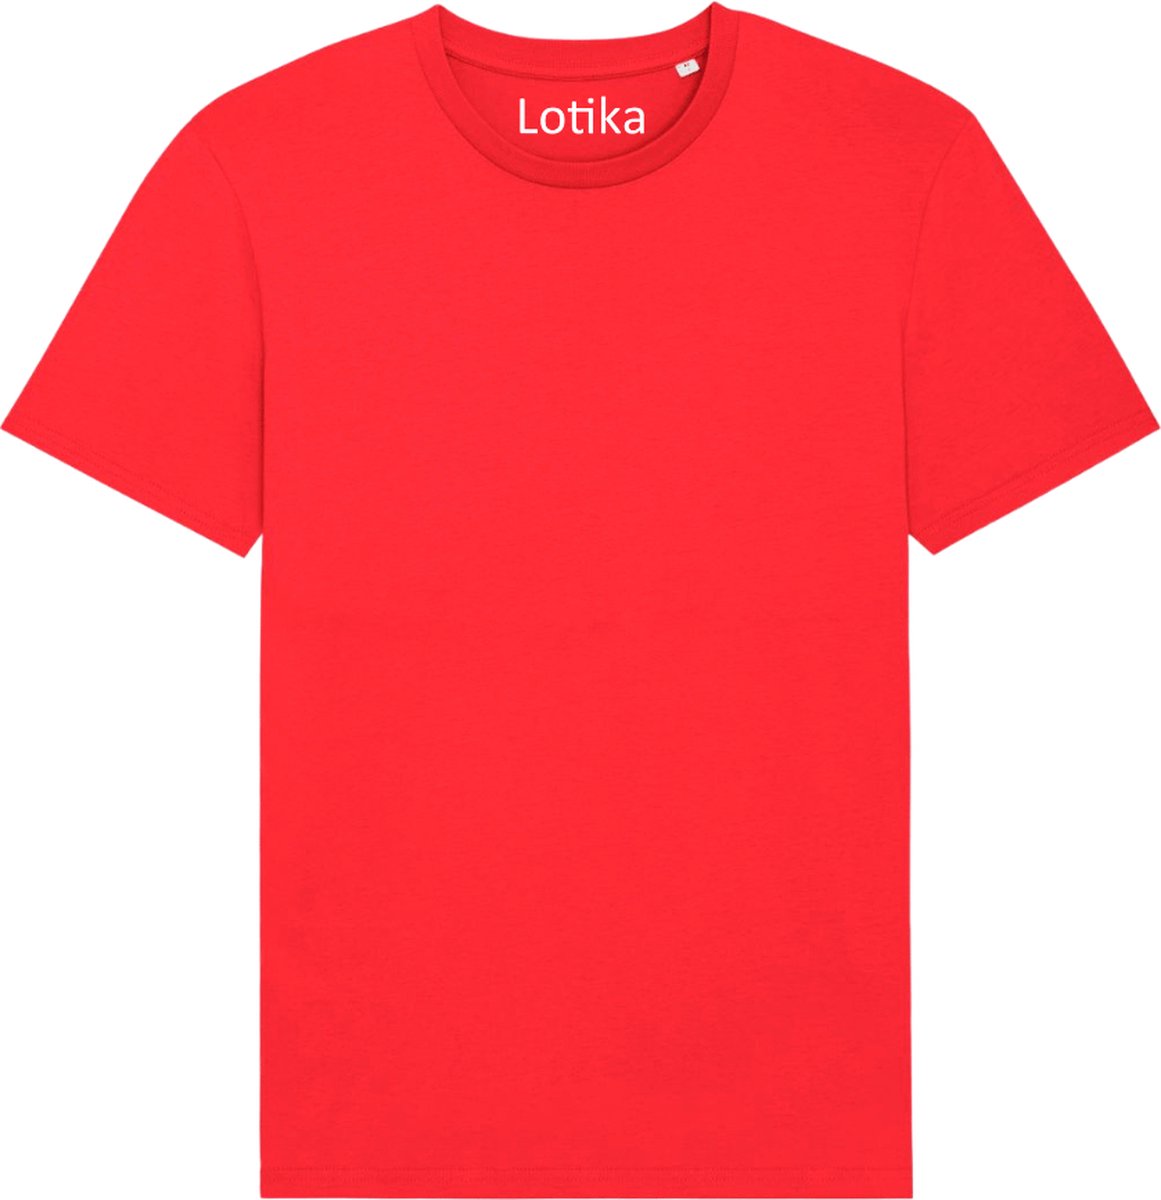 Lotika - Daan T-shirt biologisch katoen go red - rood